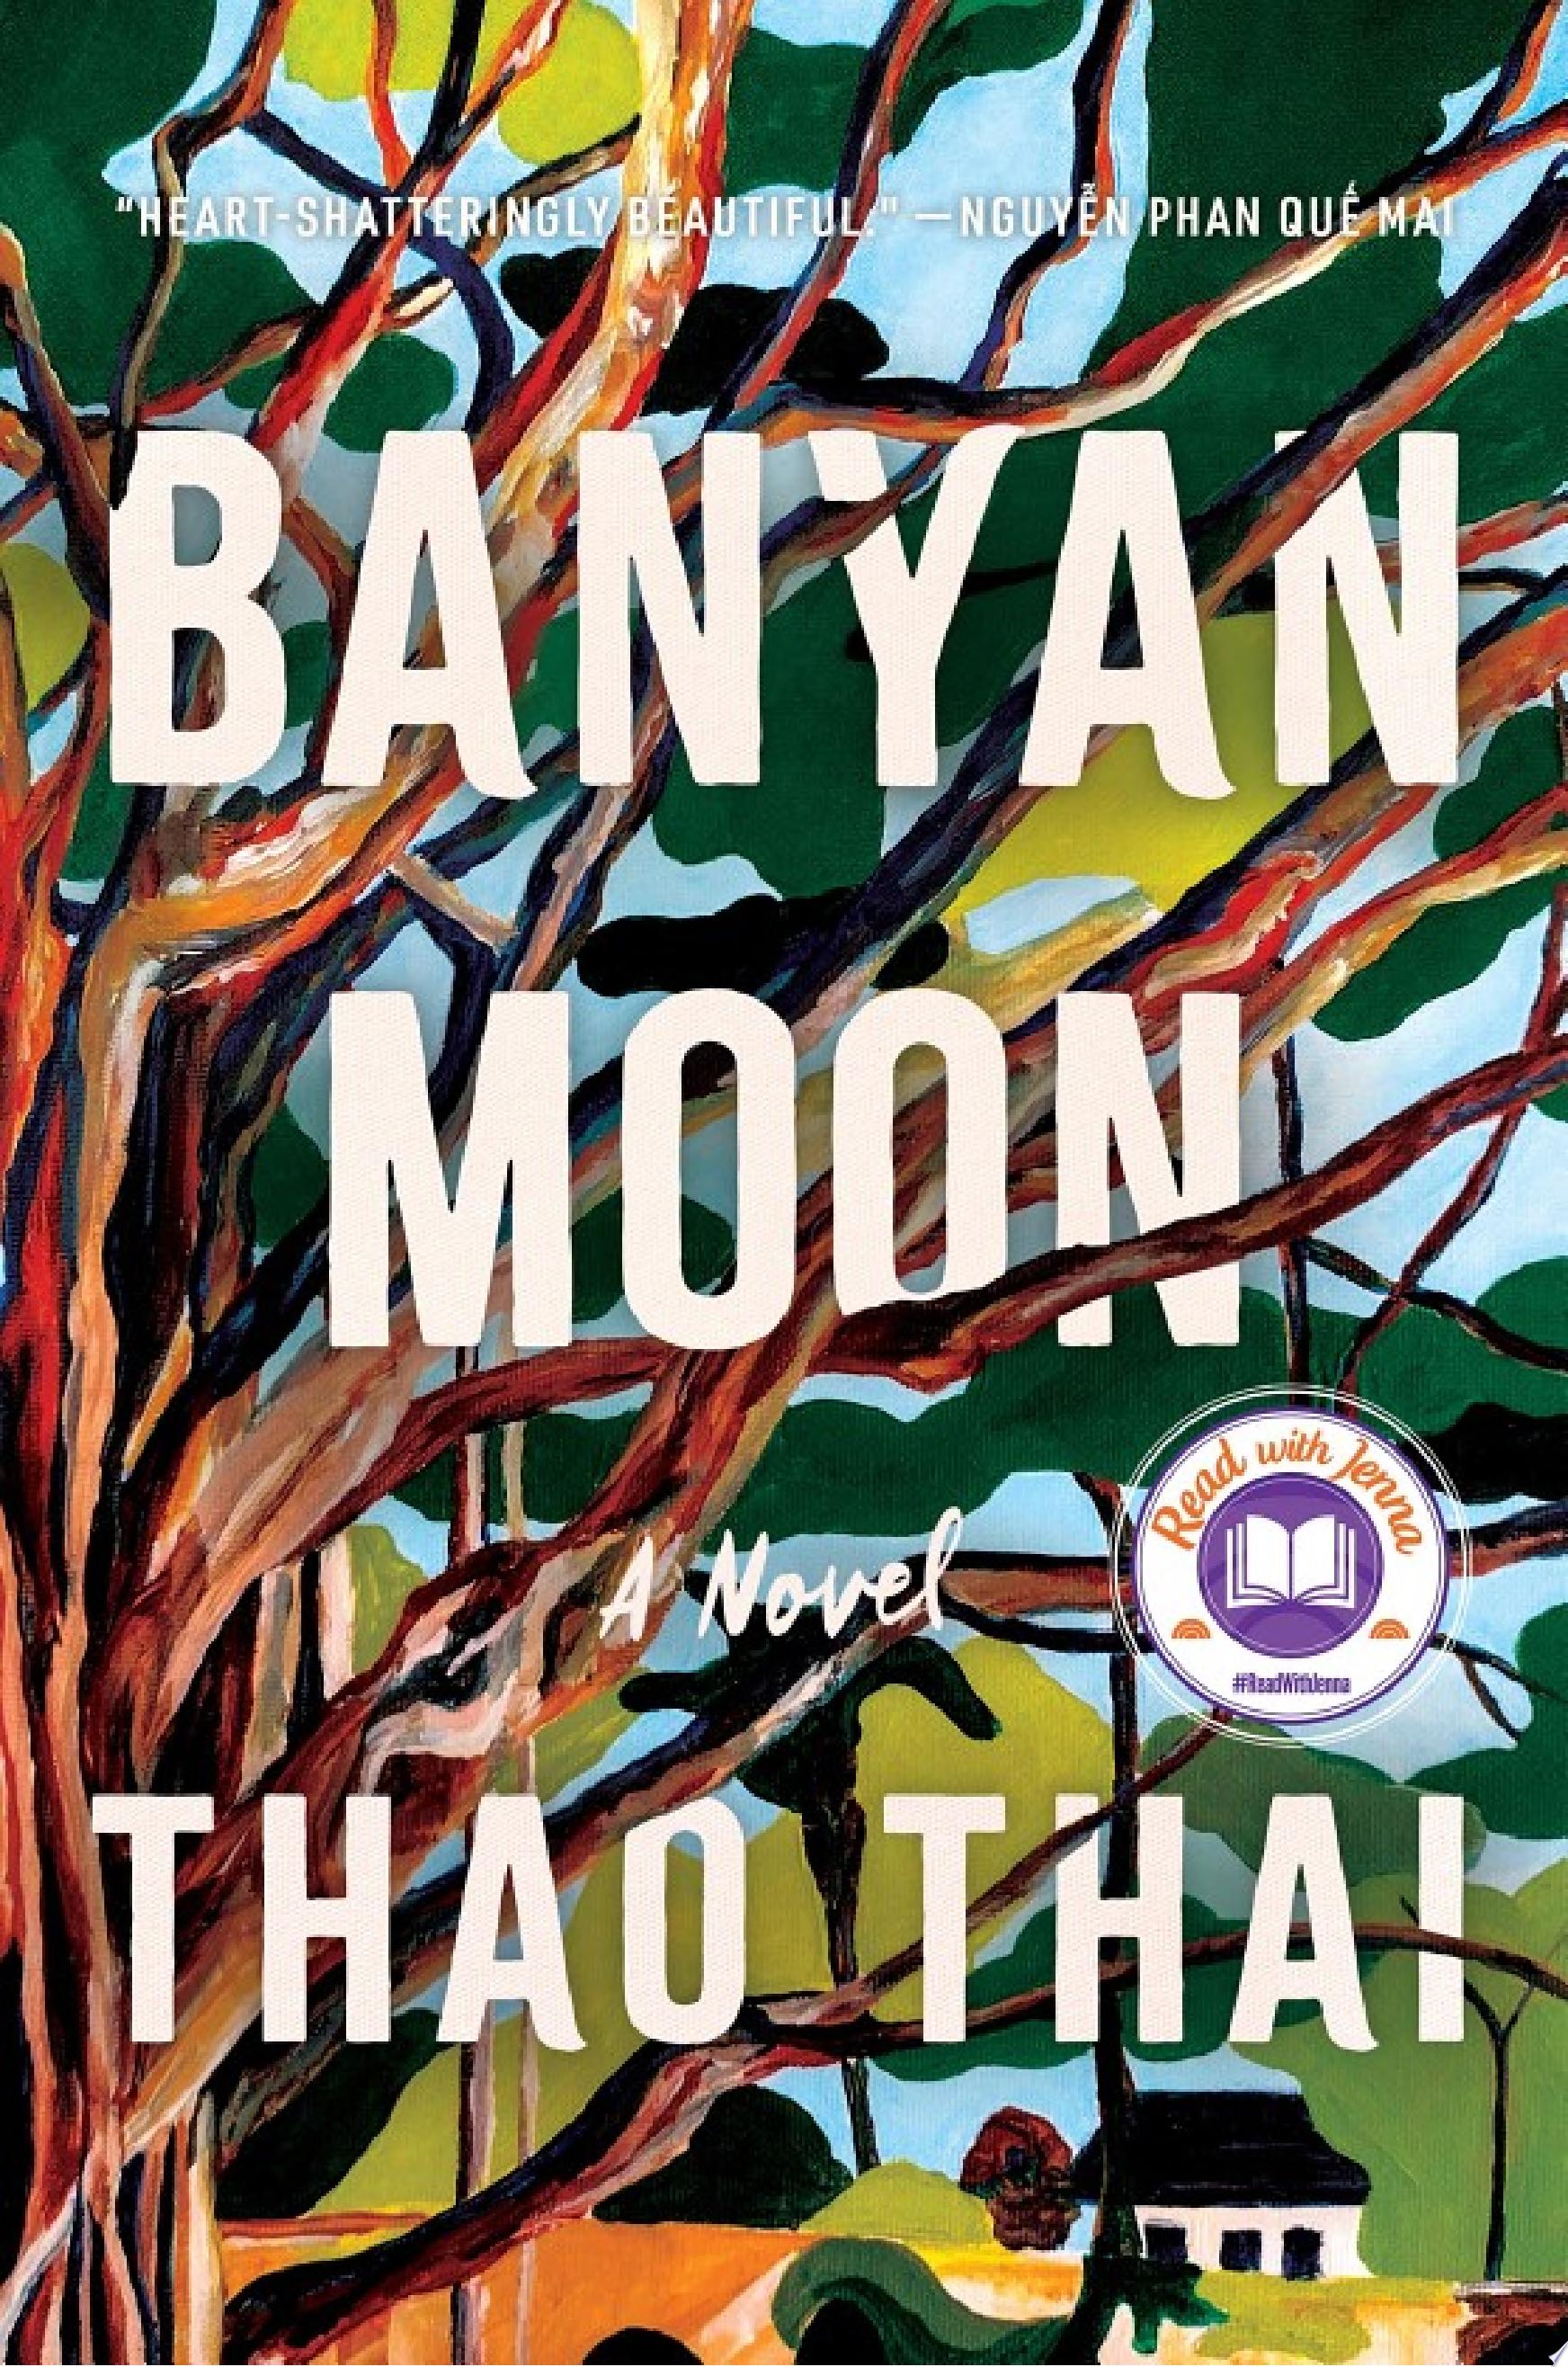 Image for "Banyan Moon"